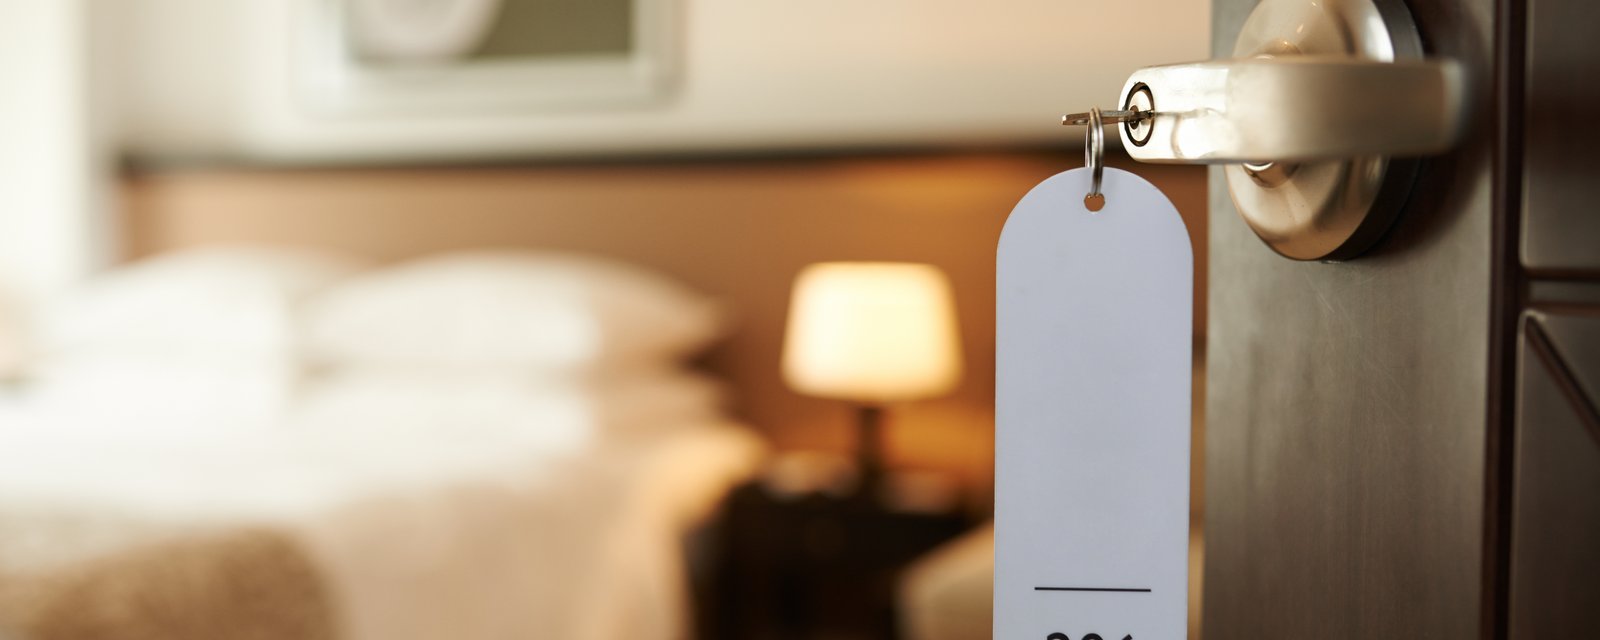 Une ancienne employée d'hôtel met en garde les gens contre quatre objets à ne jamais utiliser dans votre chambre.